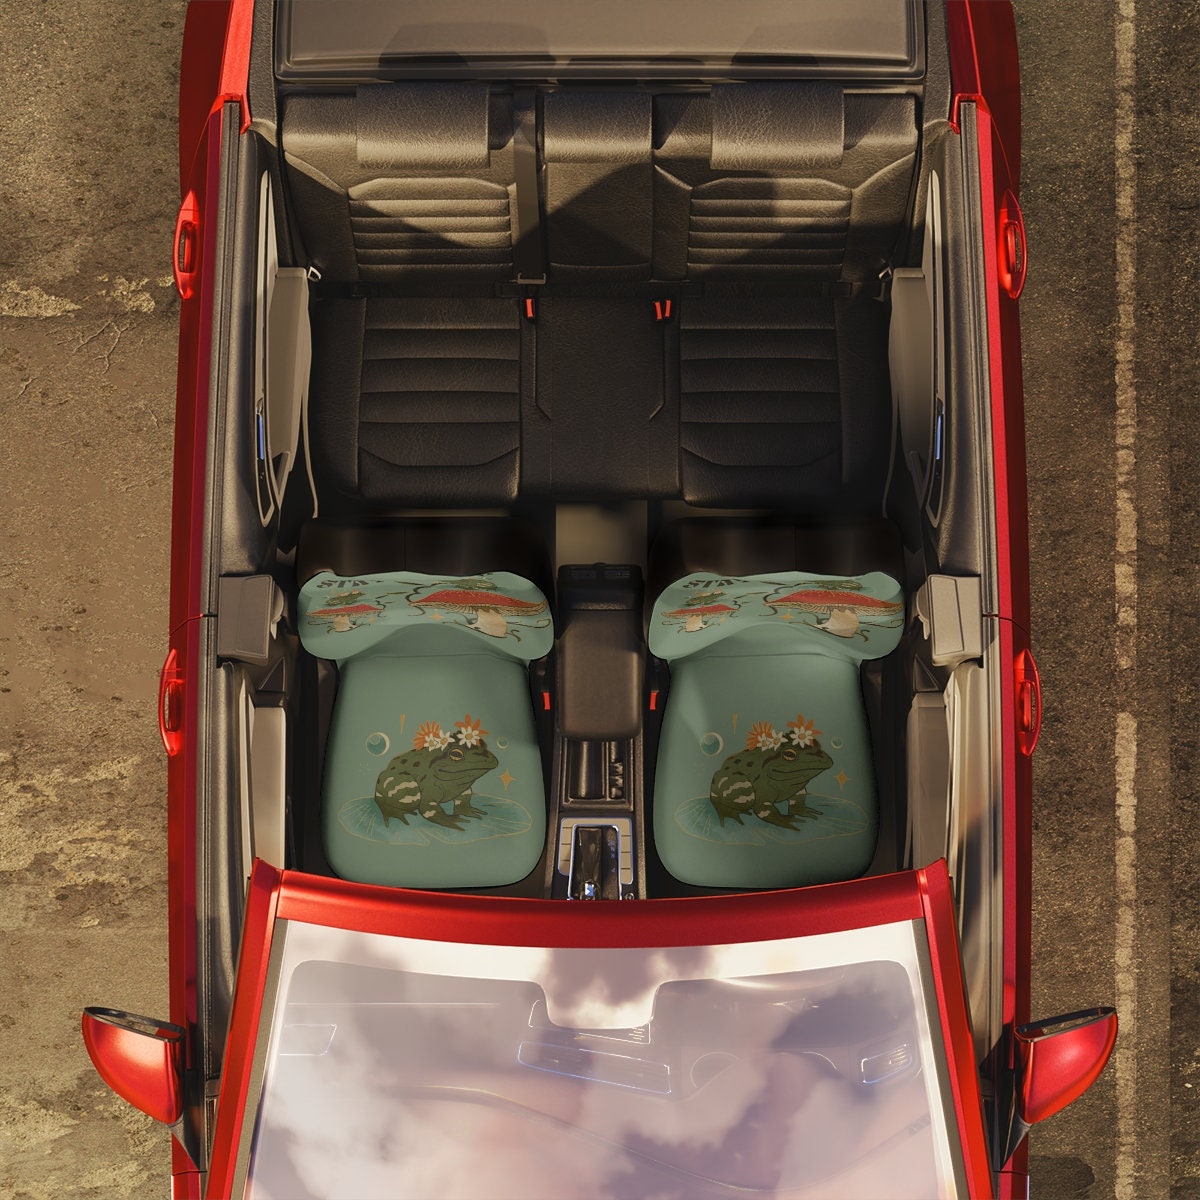 Frog car seat cover - .de